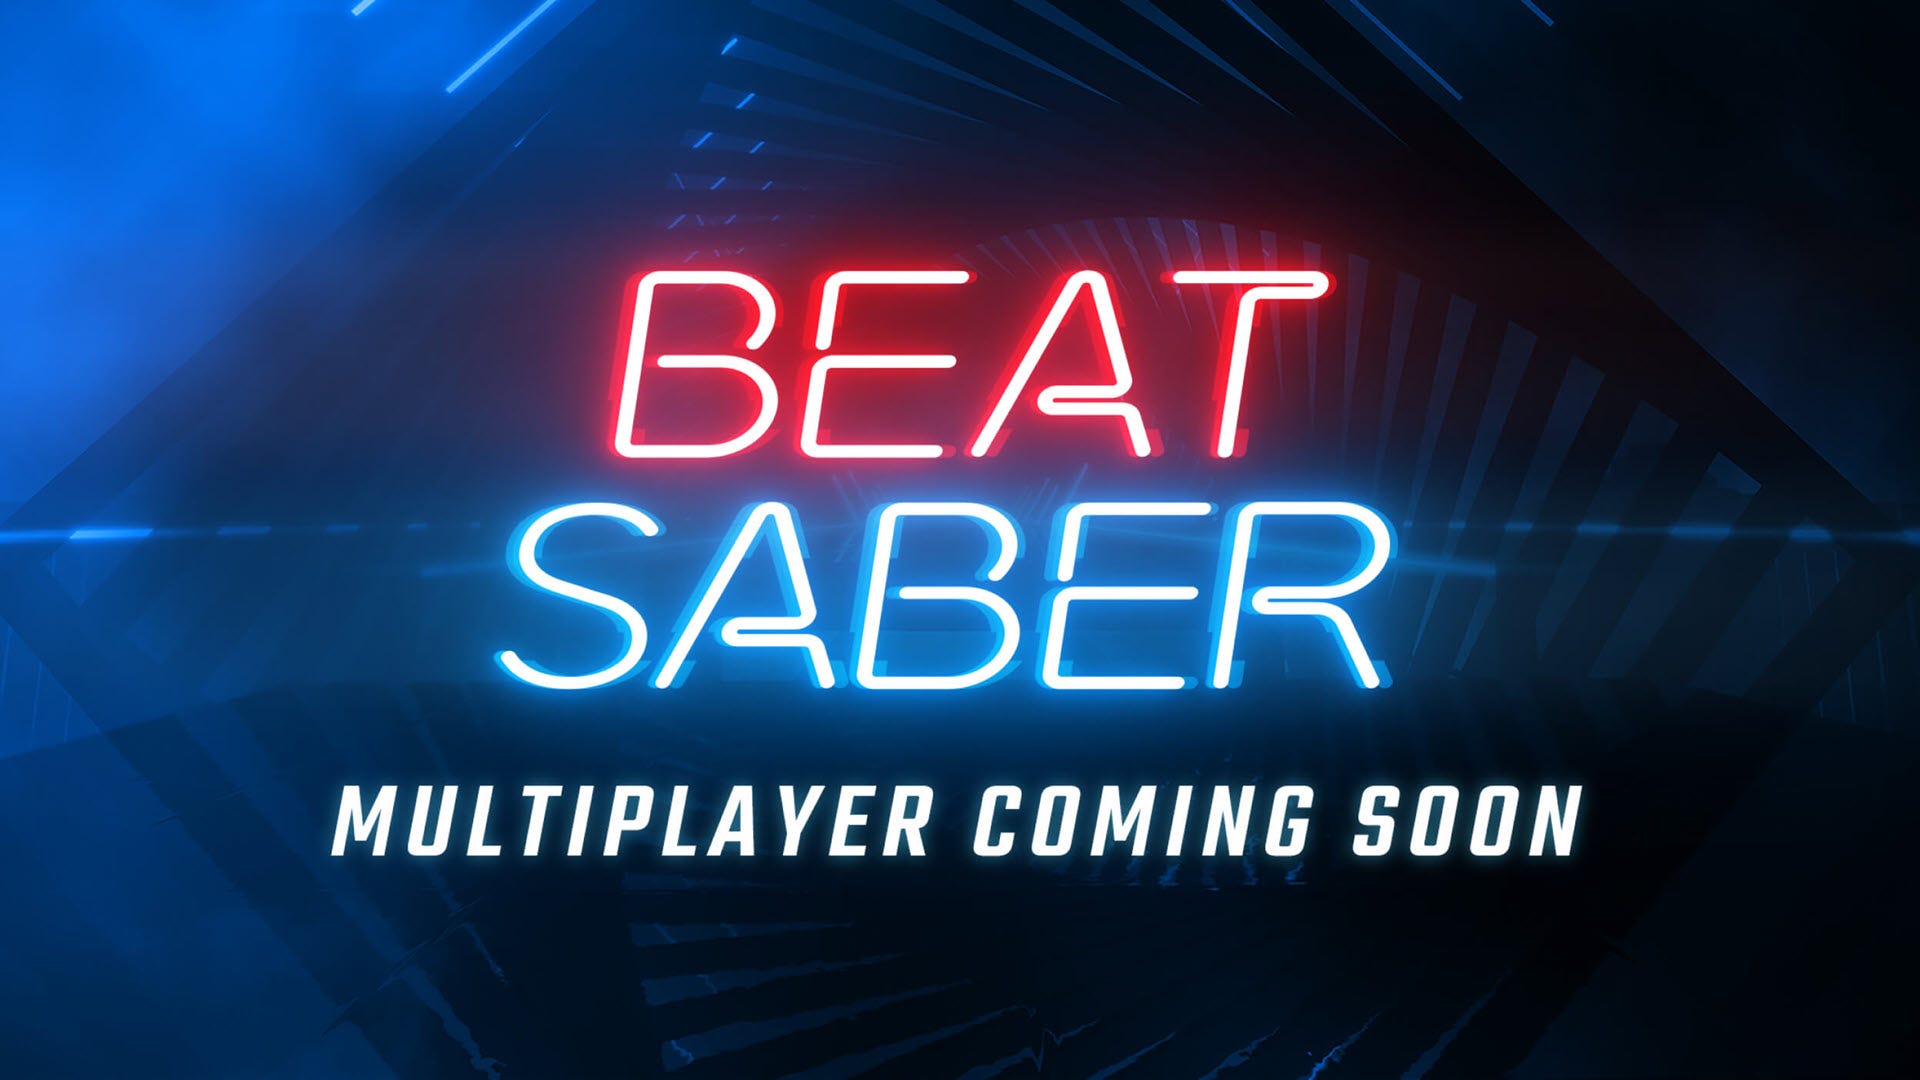 Du kan box-cut med dina vänner i det kommande “Beat Sabre” Multiplayer Mode